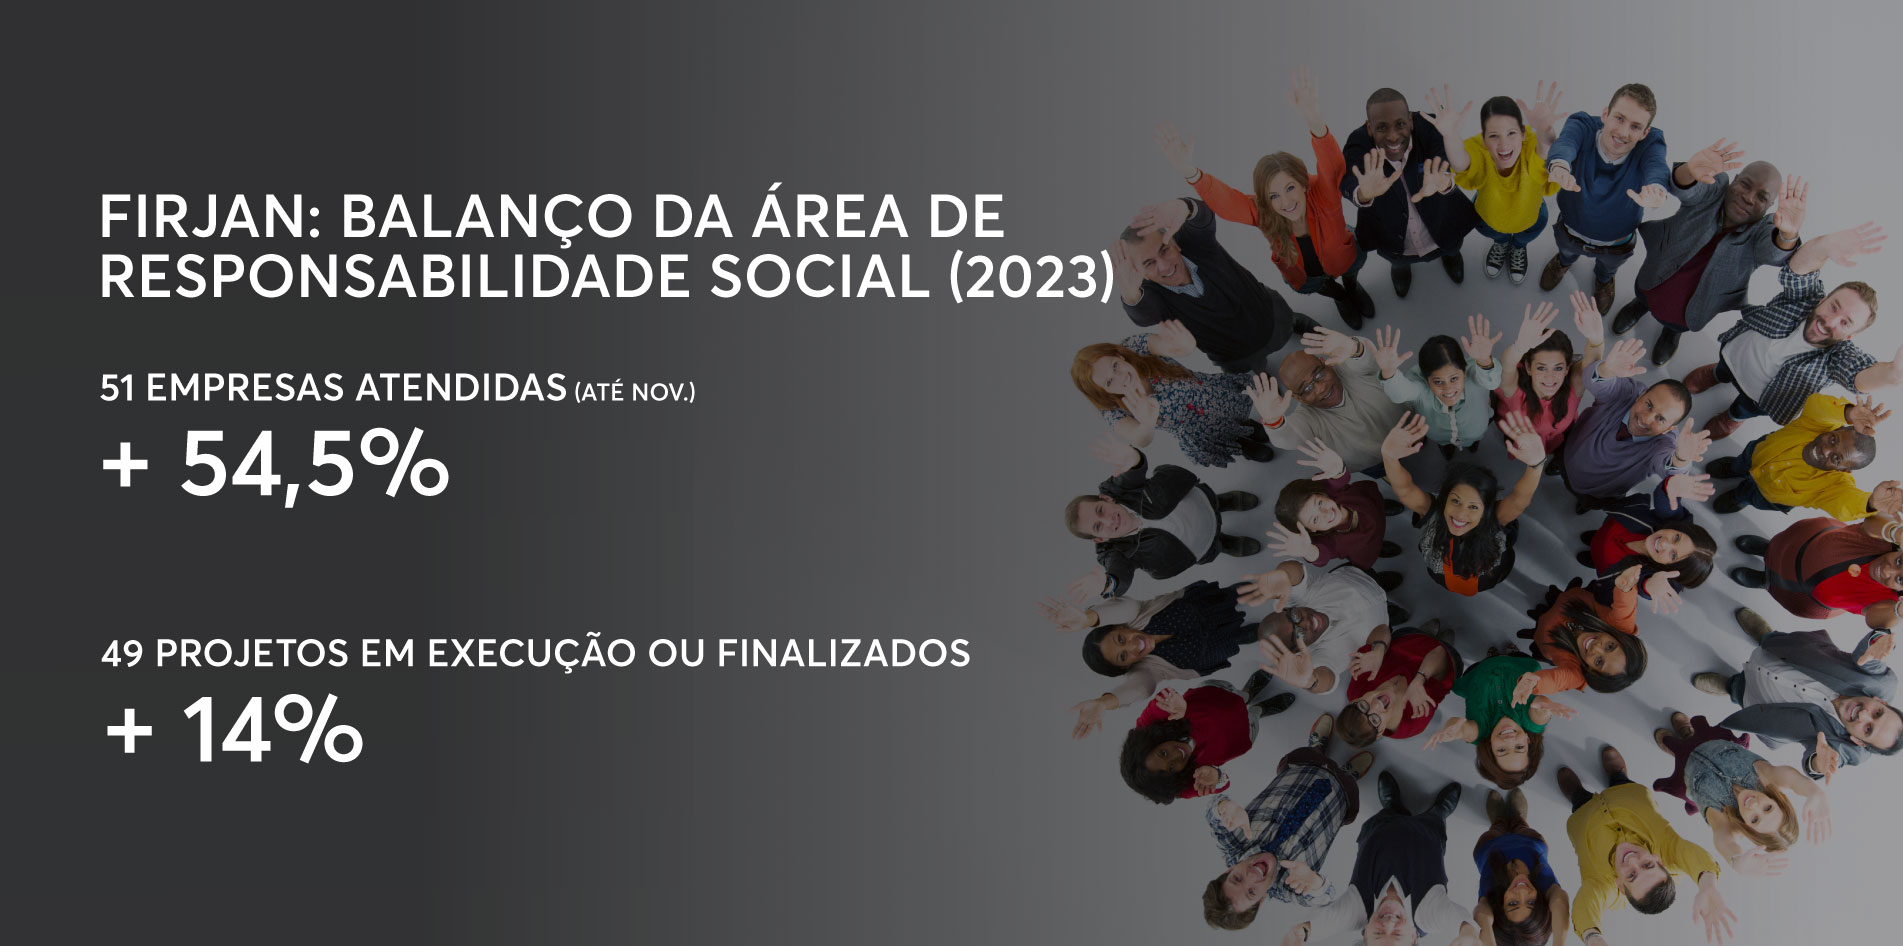 Balanço da área de Responsabilidade Social da Firjan 2023